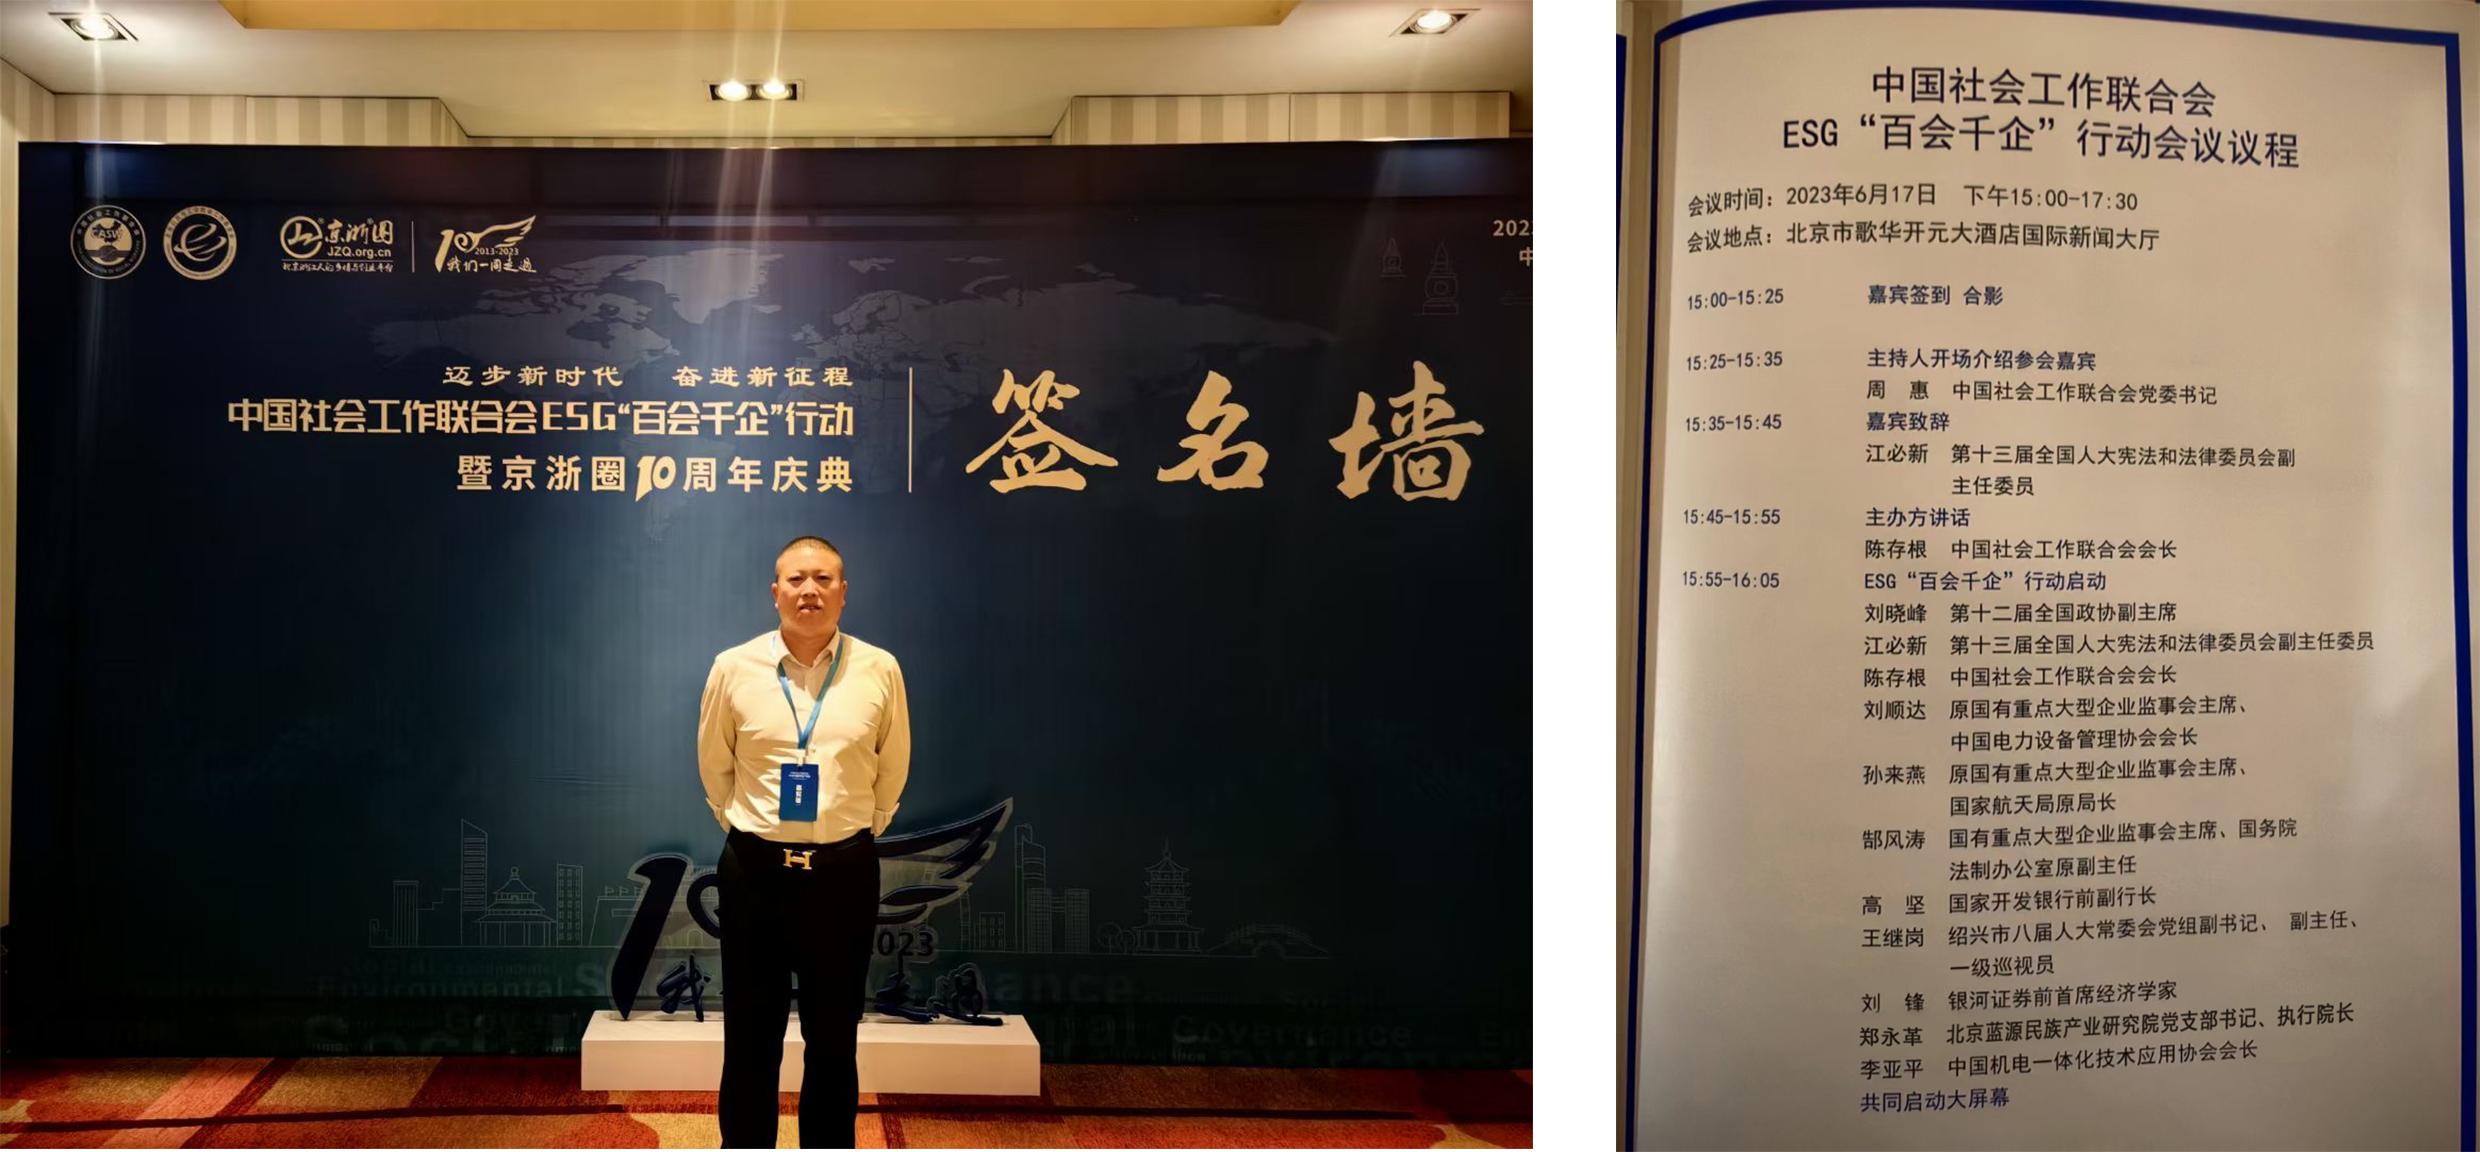 郑永革执行院长受邀出席中国社会工作联合会ESG“百会千企”行动大会